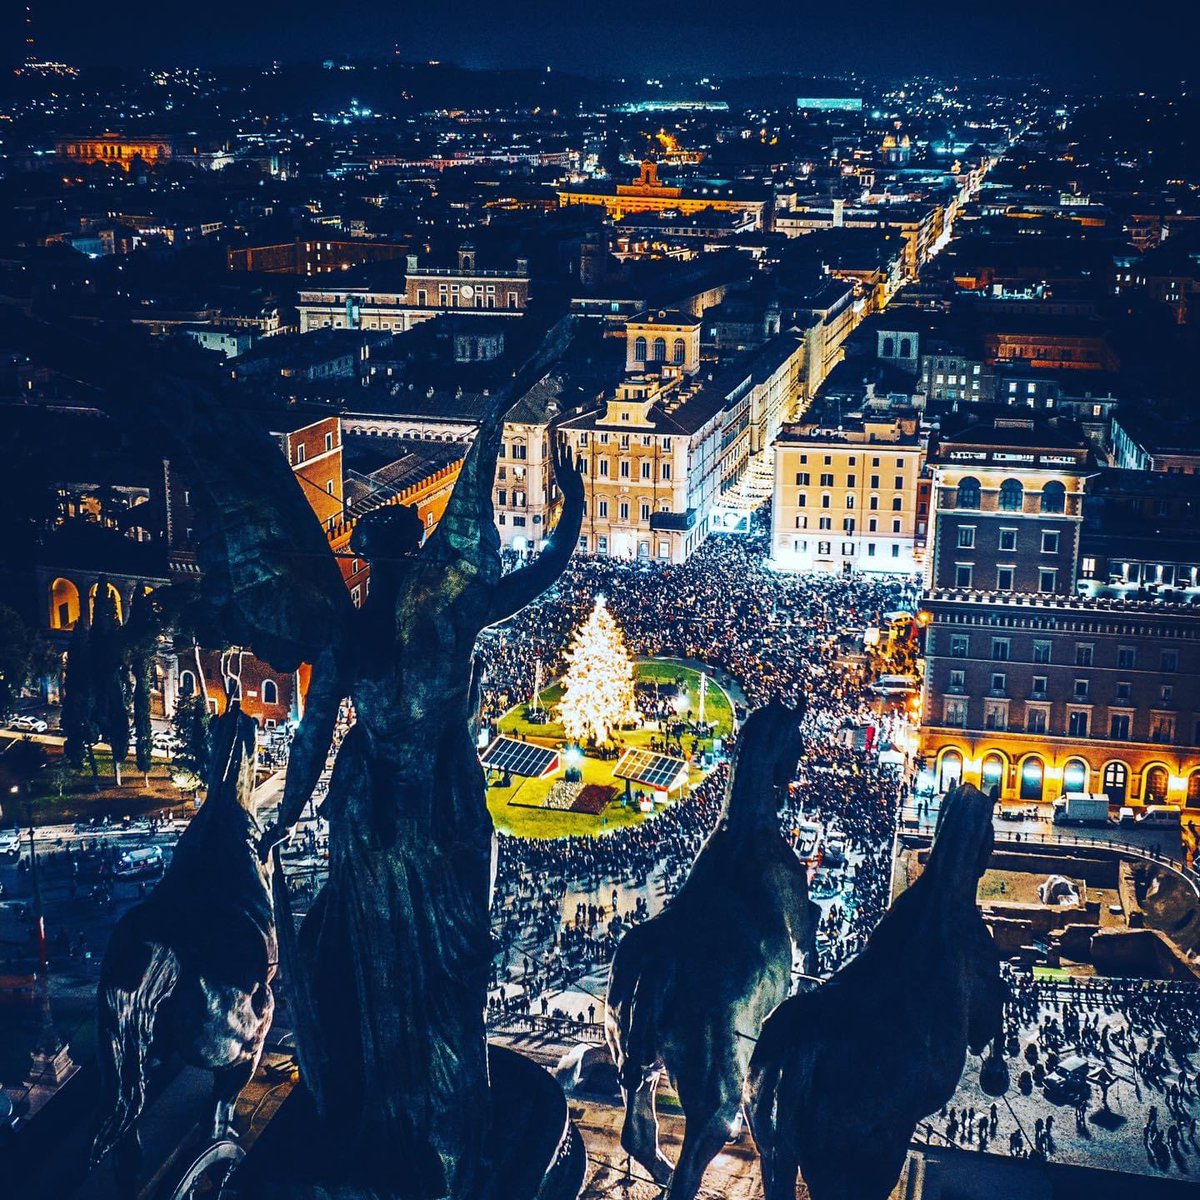 L’accensione dell’albero di Natale a Piazza Venezia… spettacolo puro! #8dicembre #Roma